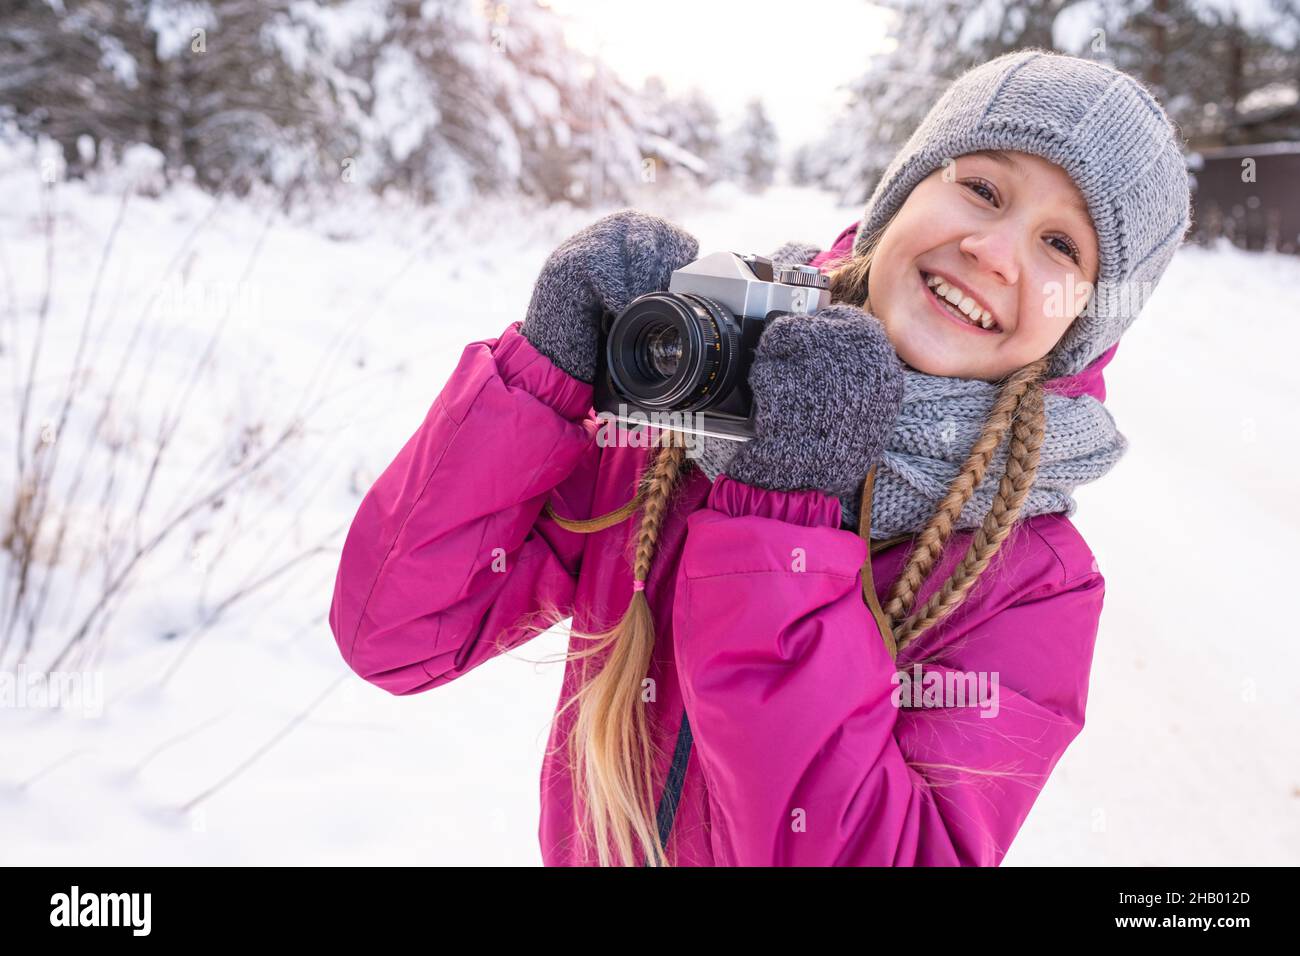 Ritratto di ragazza adolescente sorridente con lunghi pigtail in abiti caldi, tenendo la macchina fotografica in mani, contro alberi di pino nevoso. Bambini in inverno a piedi. Giorno di Foto Stock